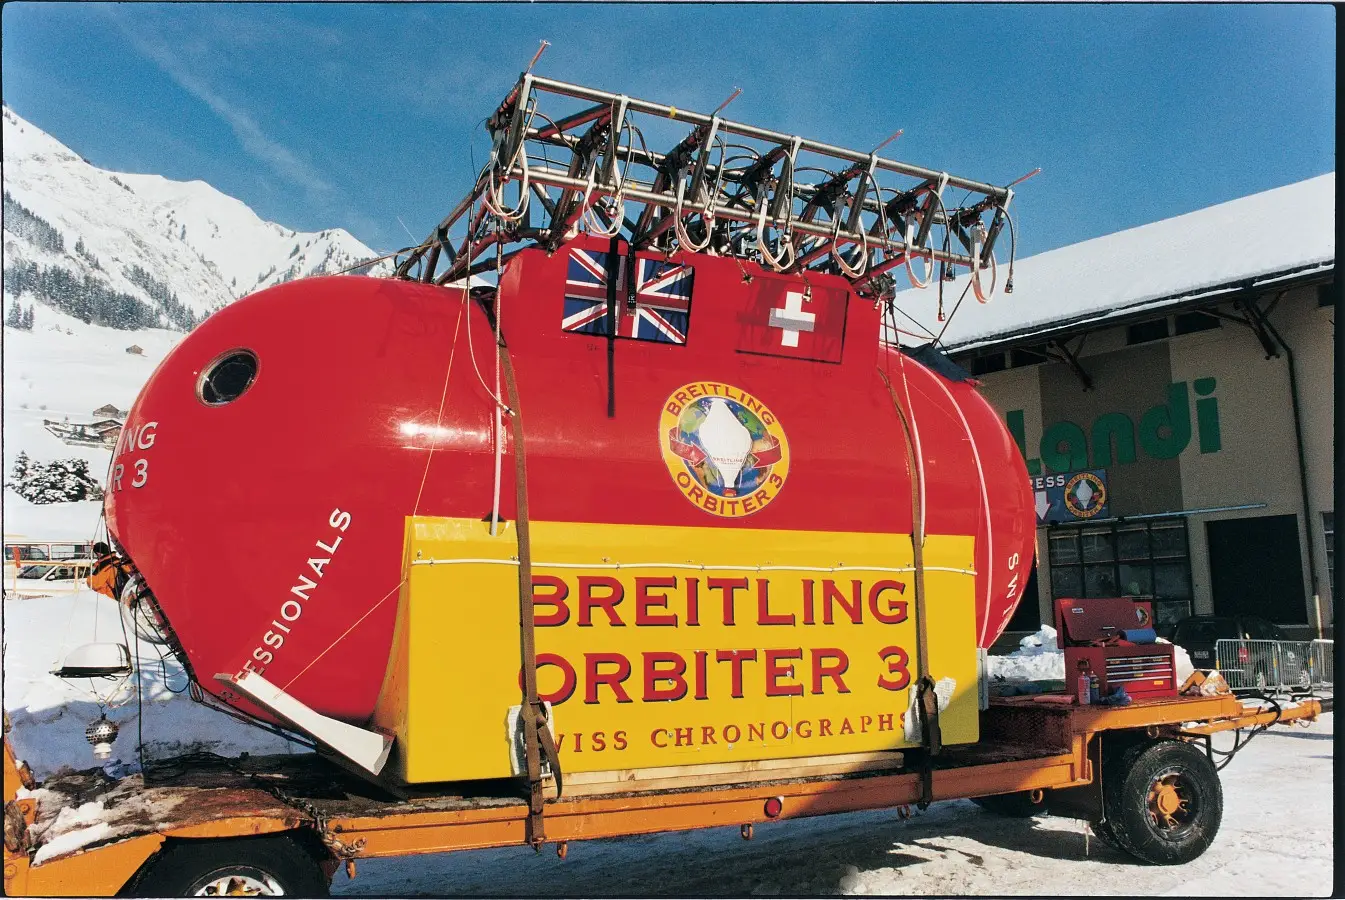 Breitling Orbiter